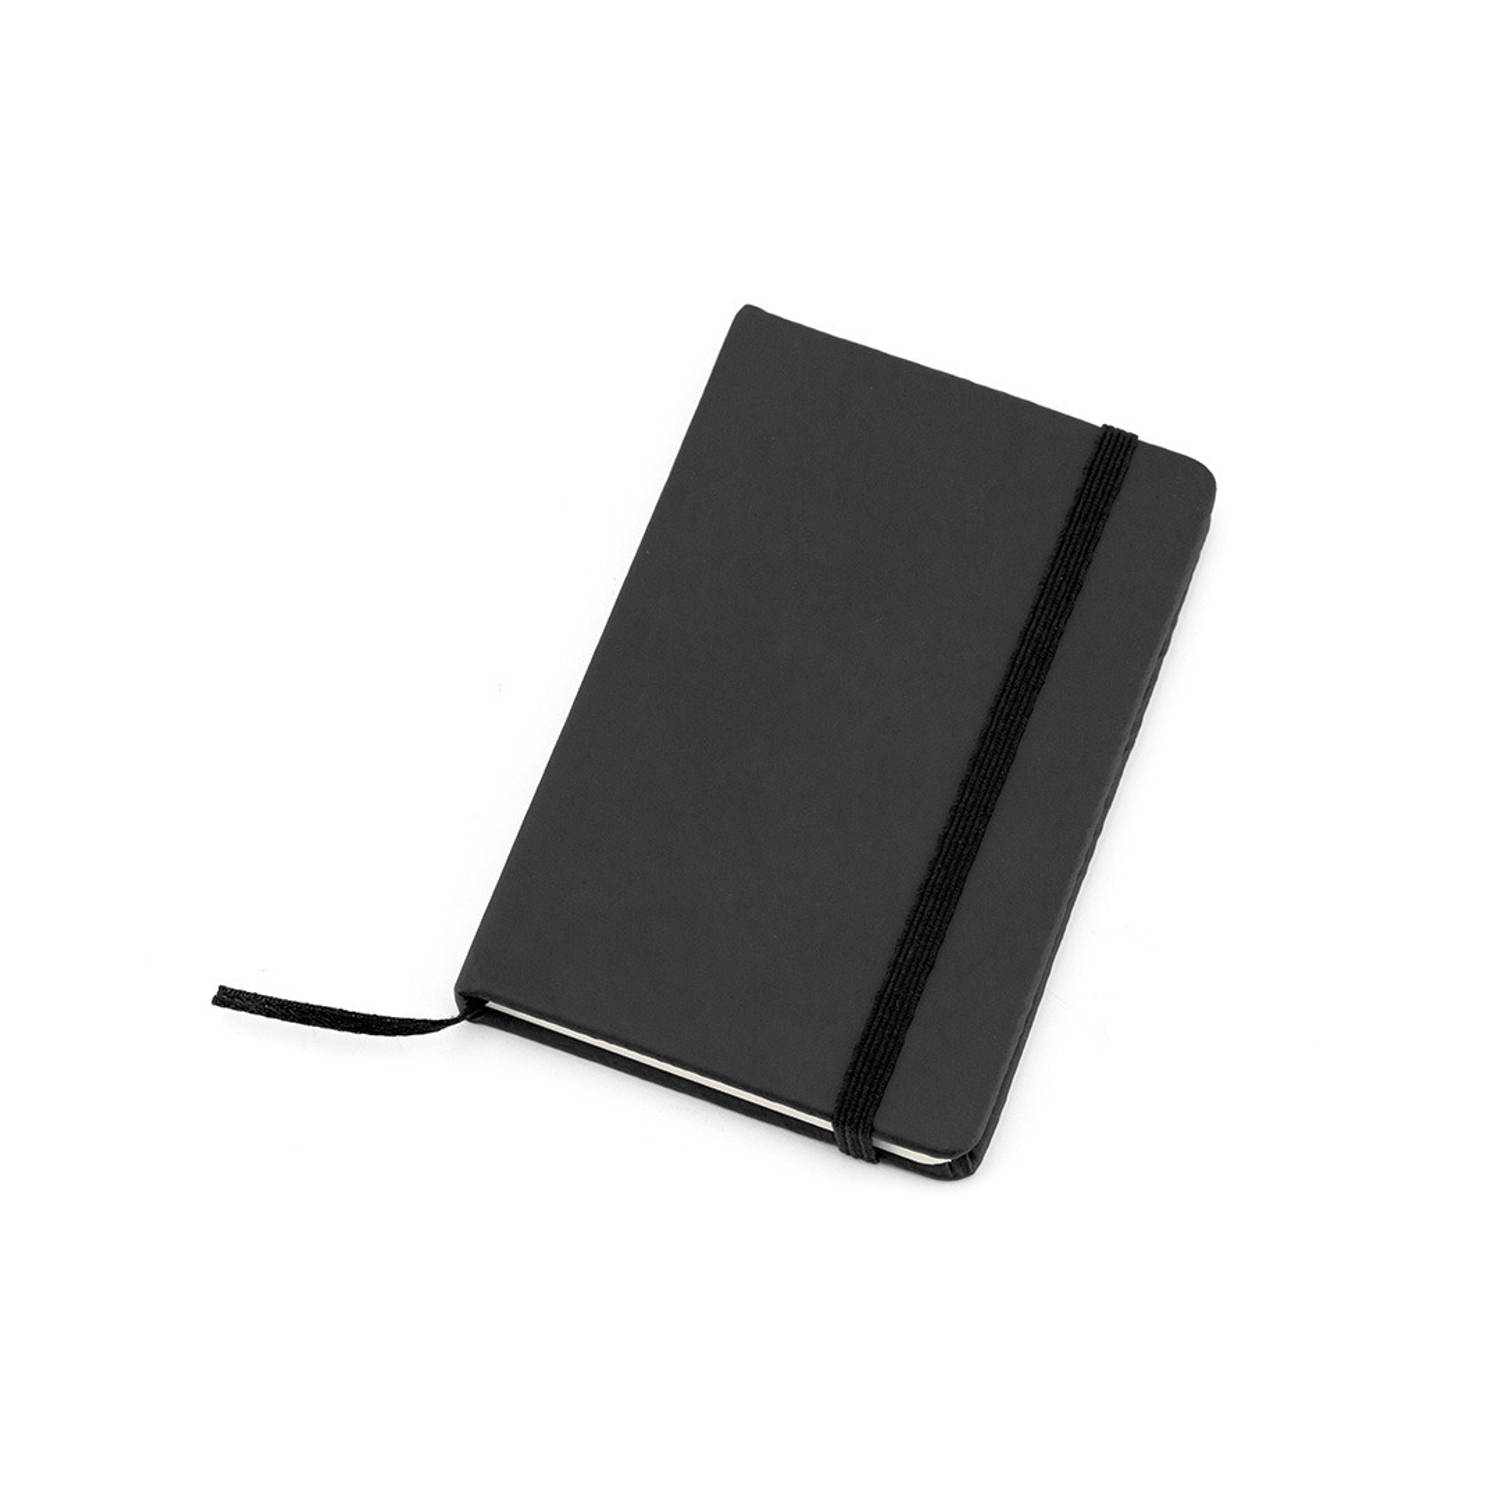 Notitieblokje harde kaft zwart 9 x 14 cm - Notitieboek